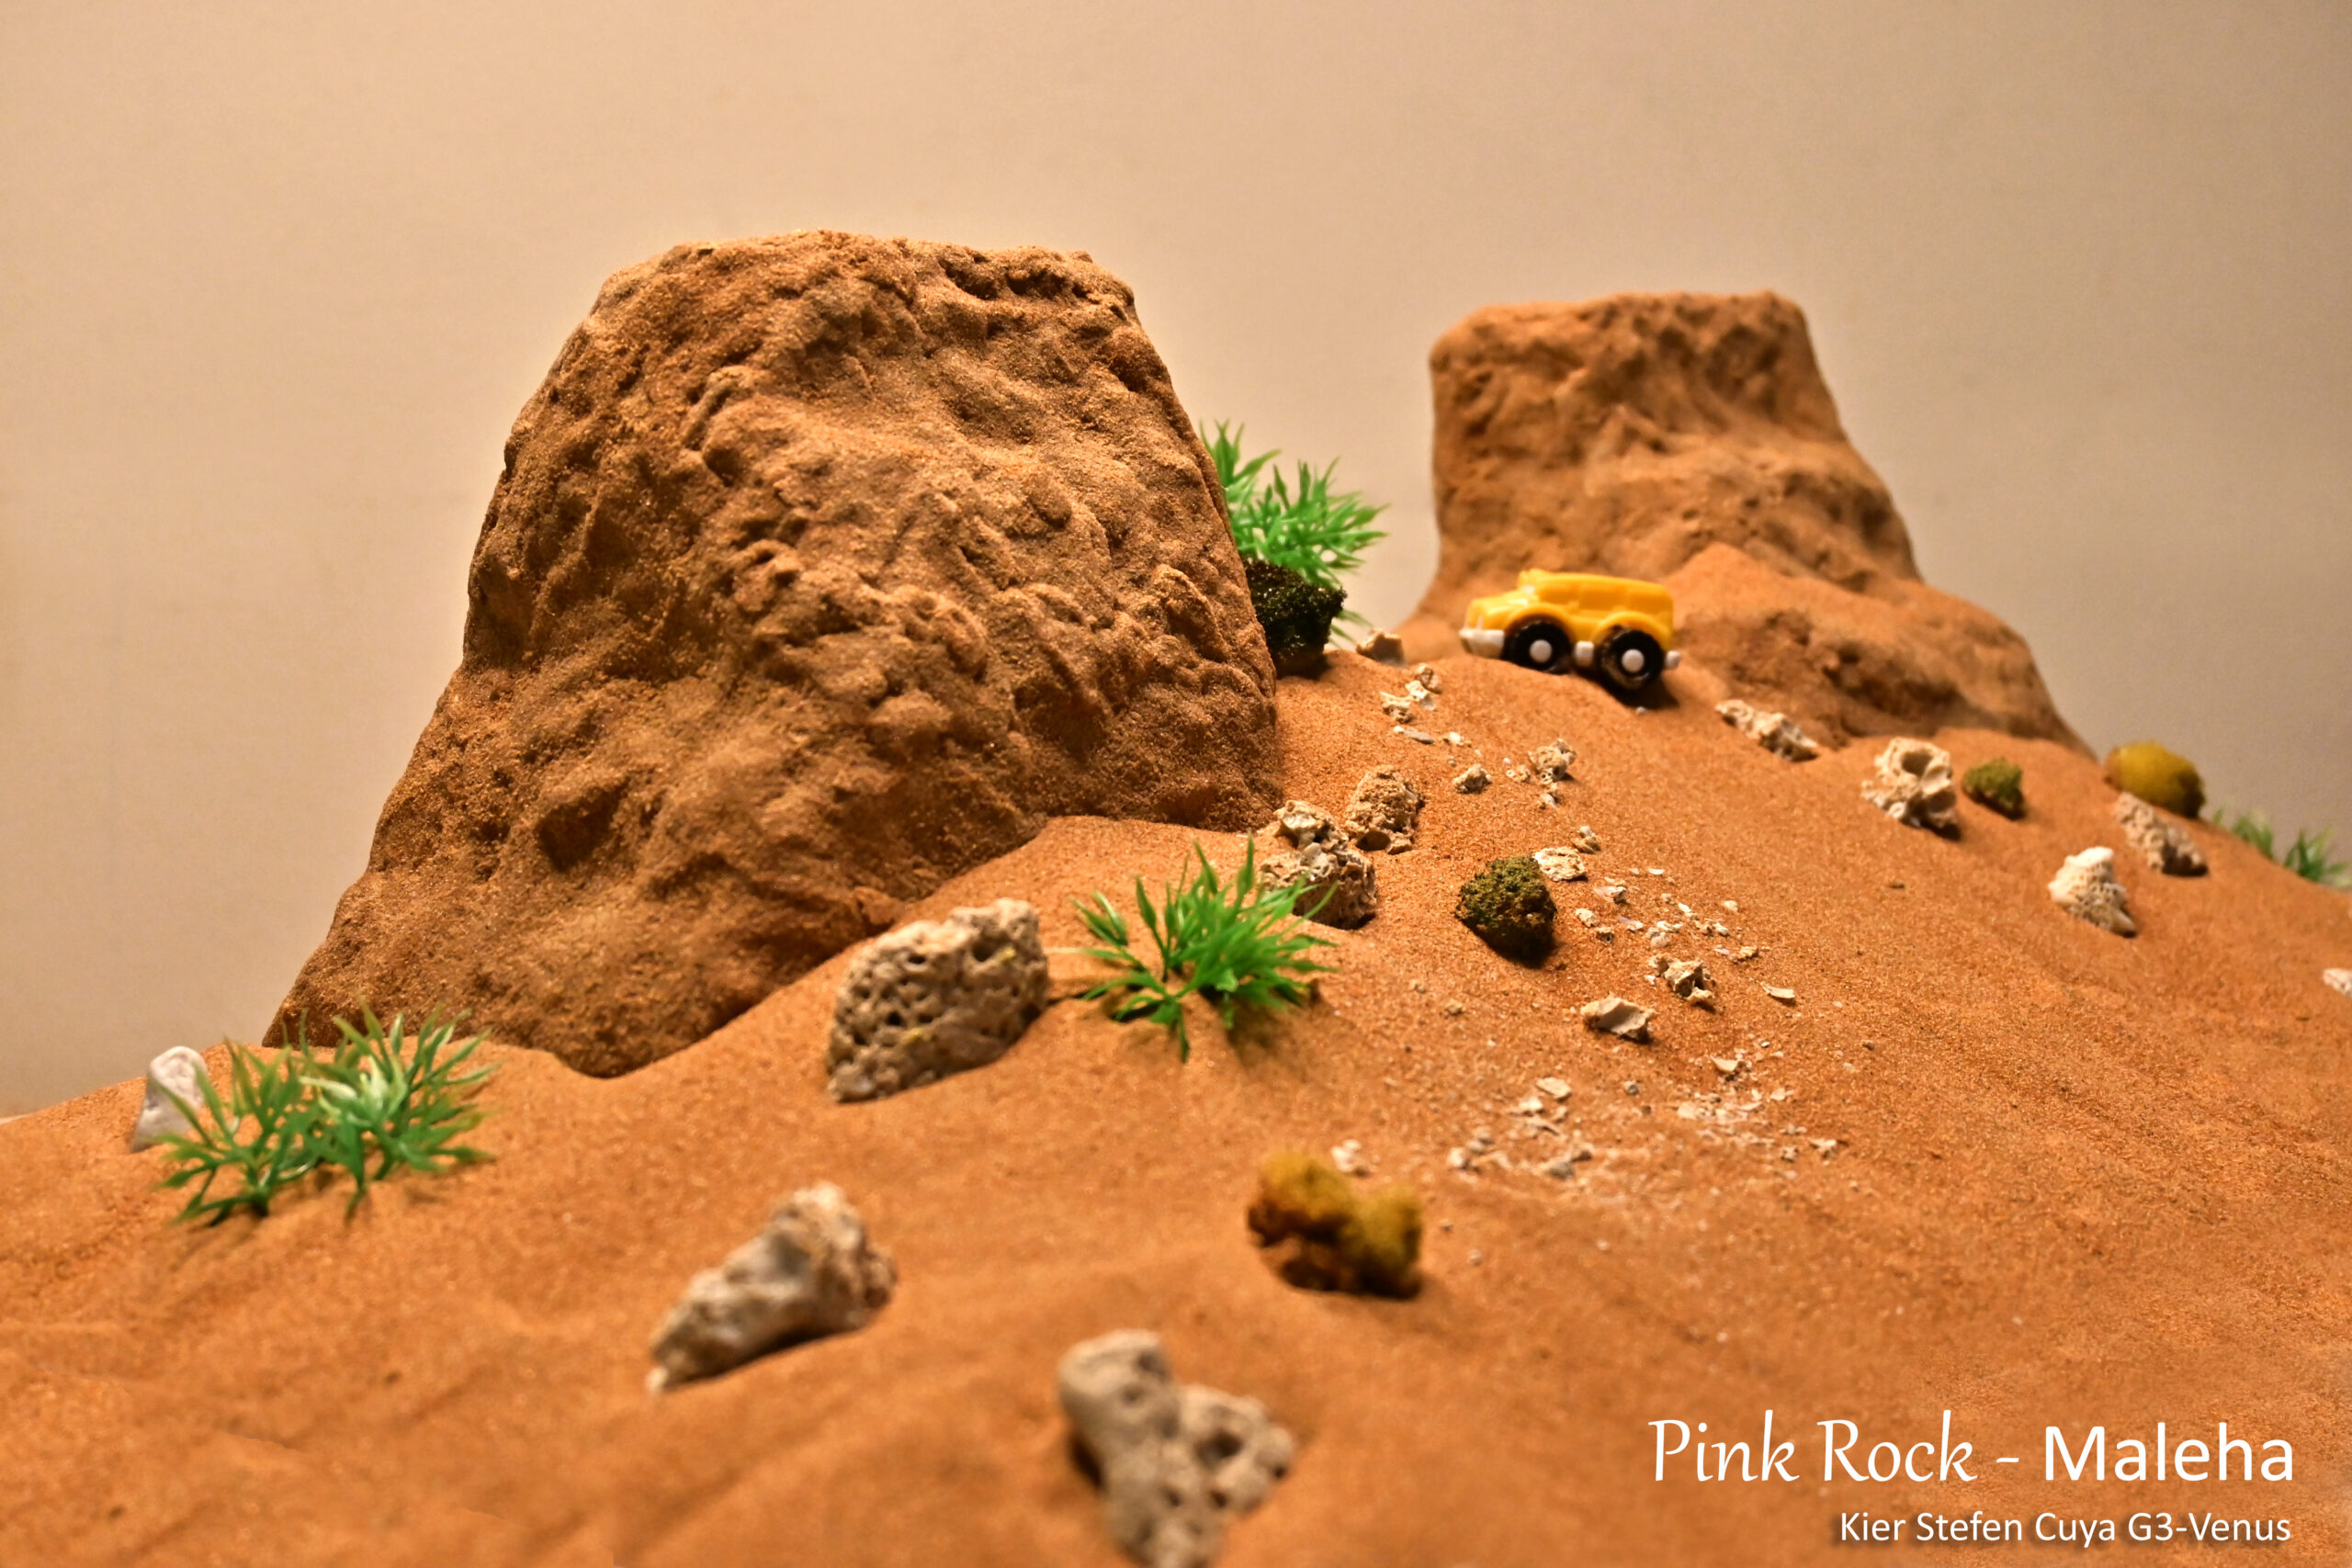 Pink Rock – Maleha by Kier Stefen Cuya